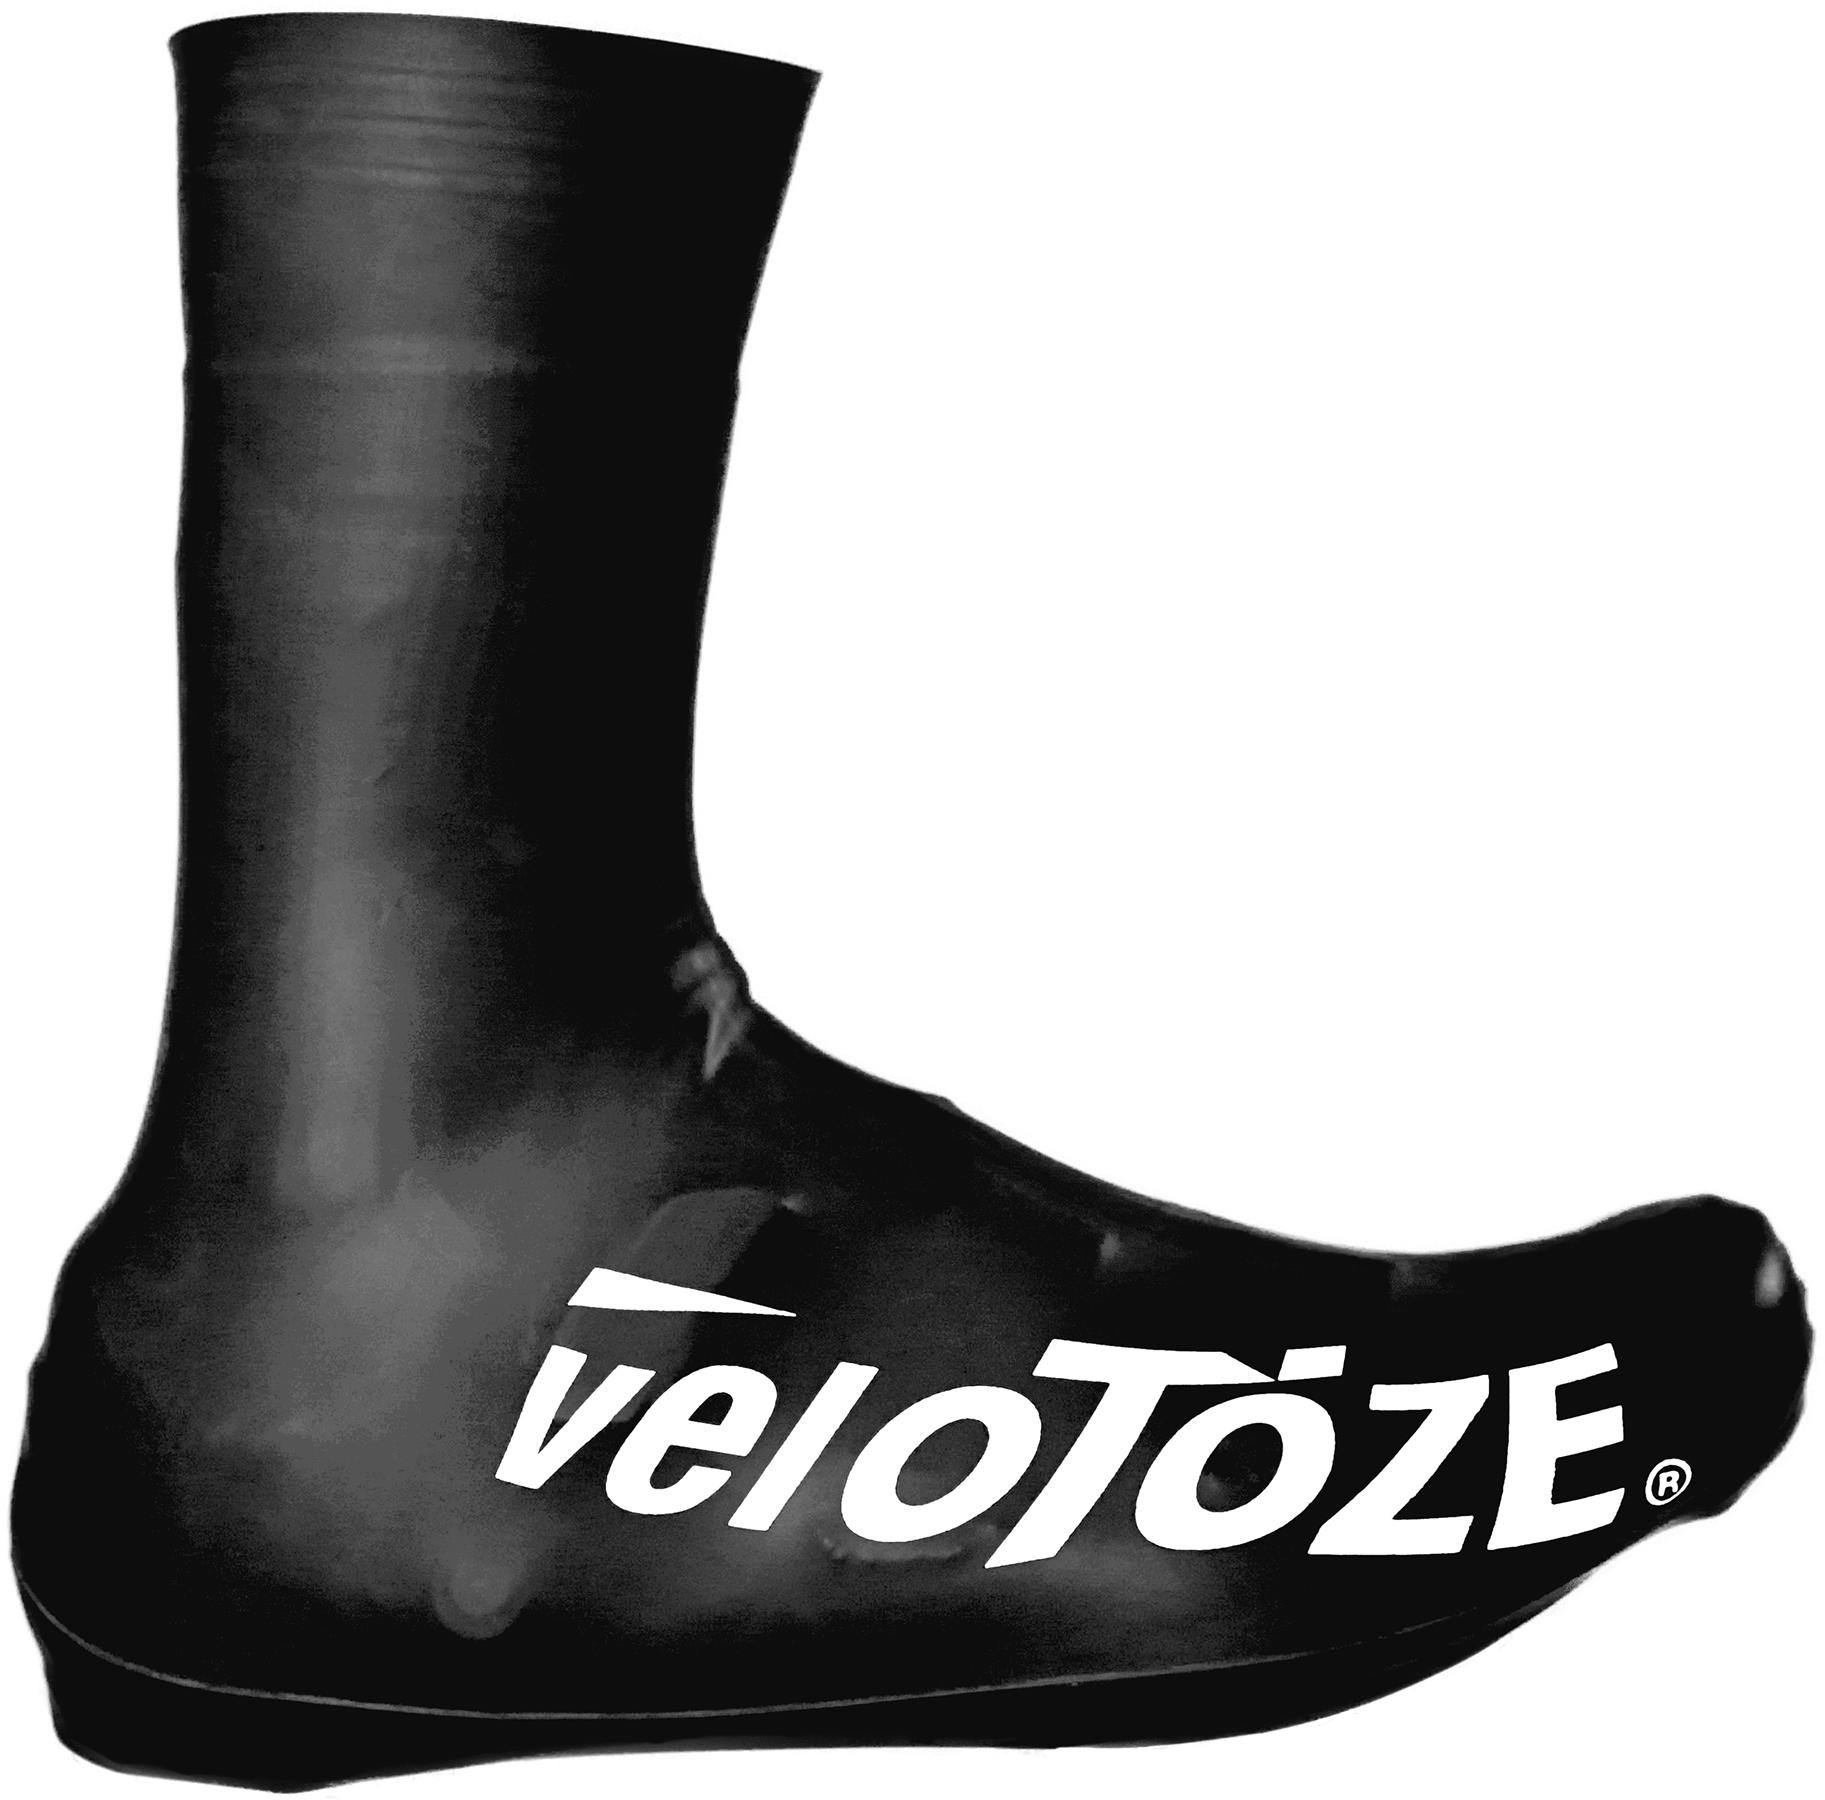 Velotoze Tall Shoe Covers 2.0  Black